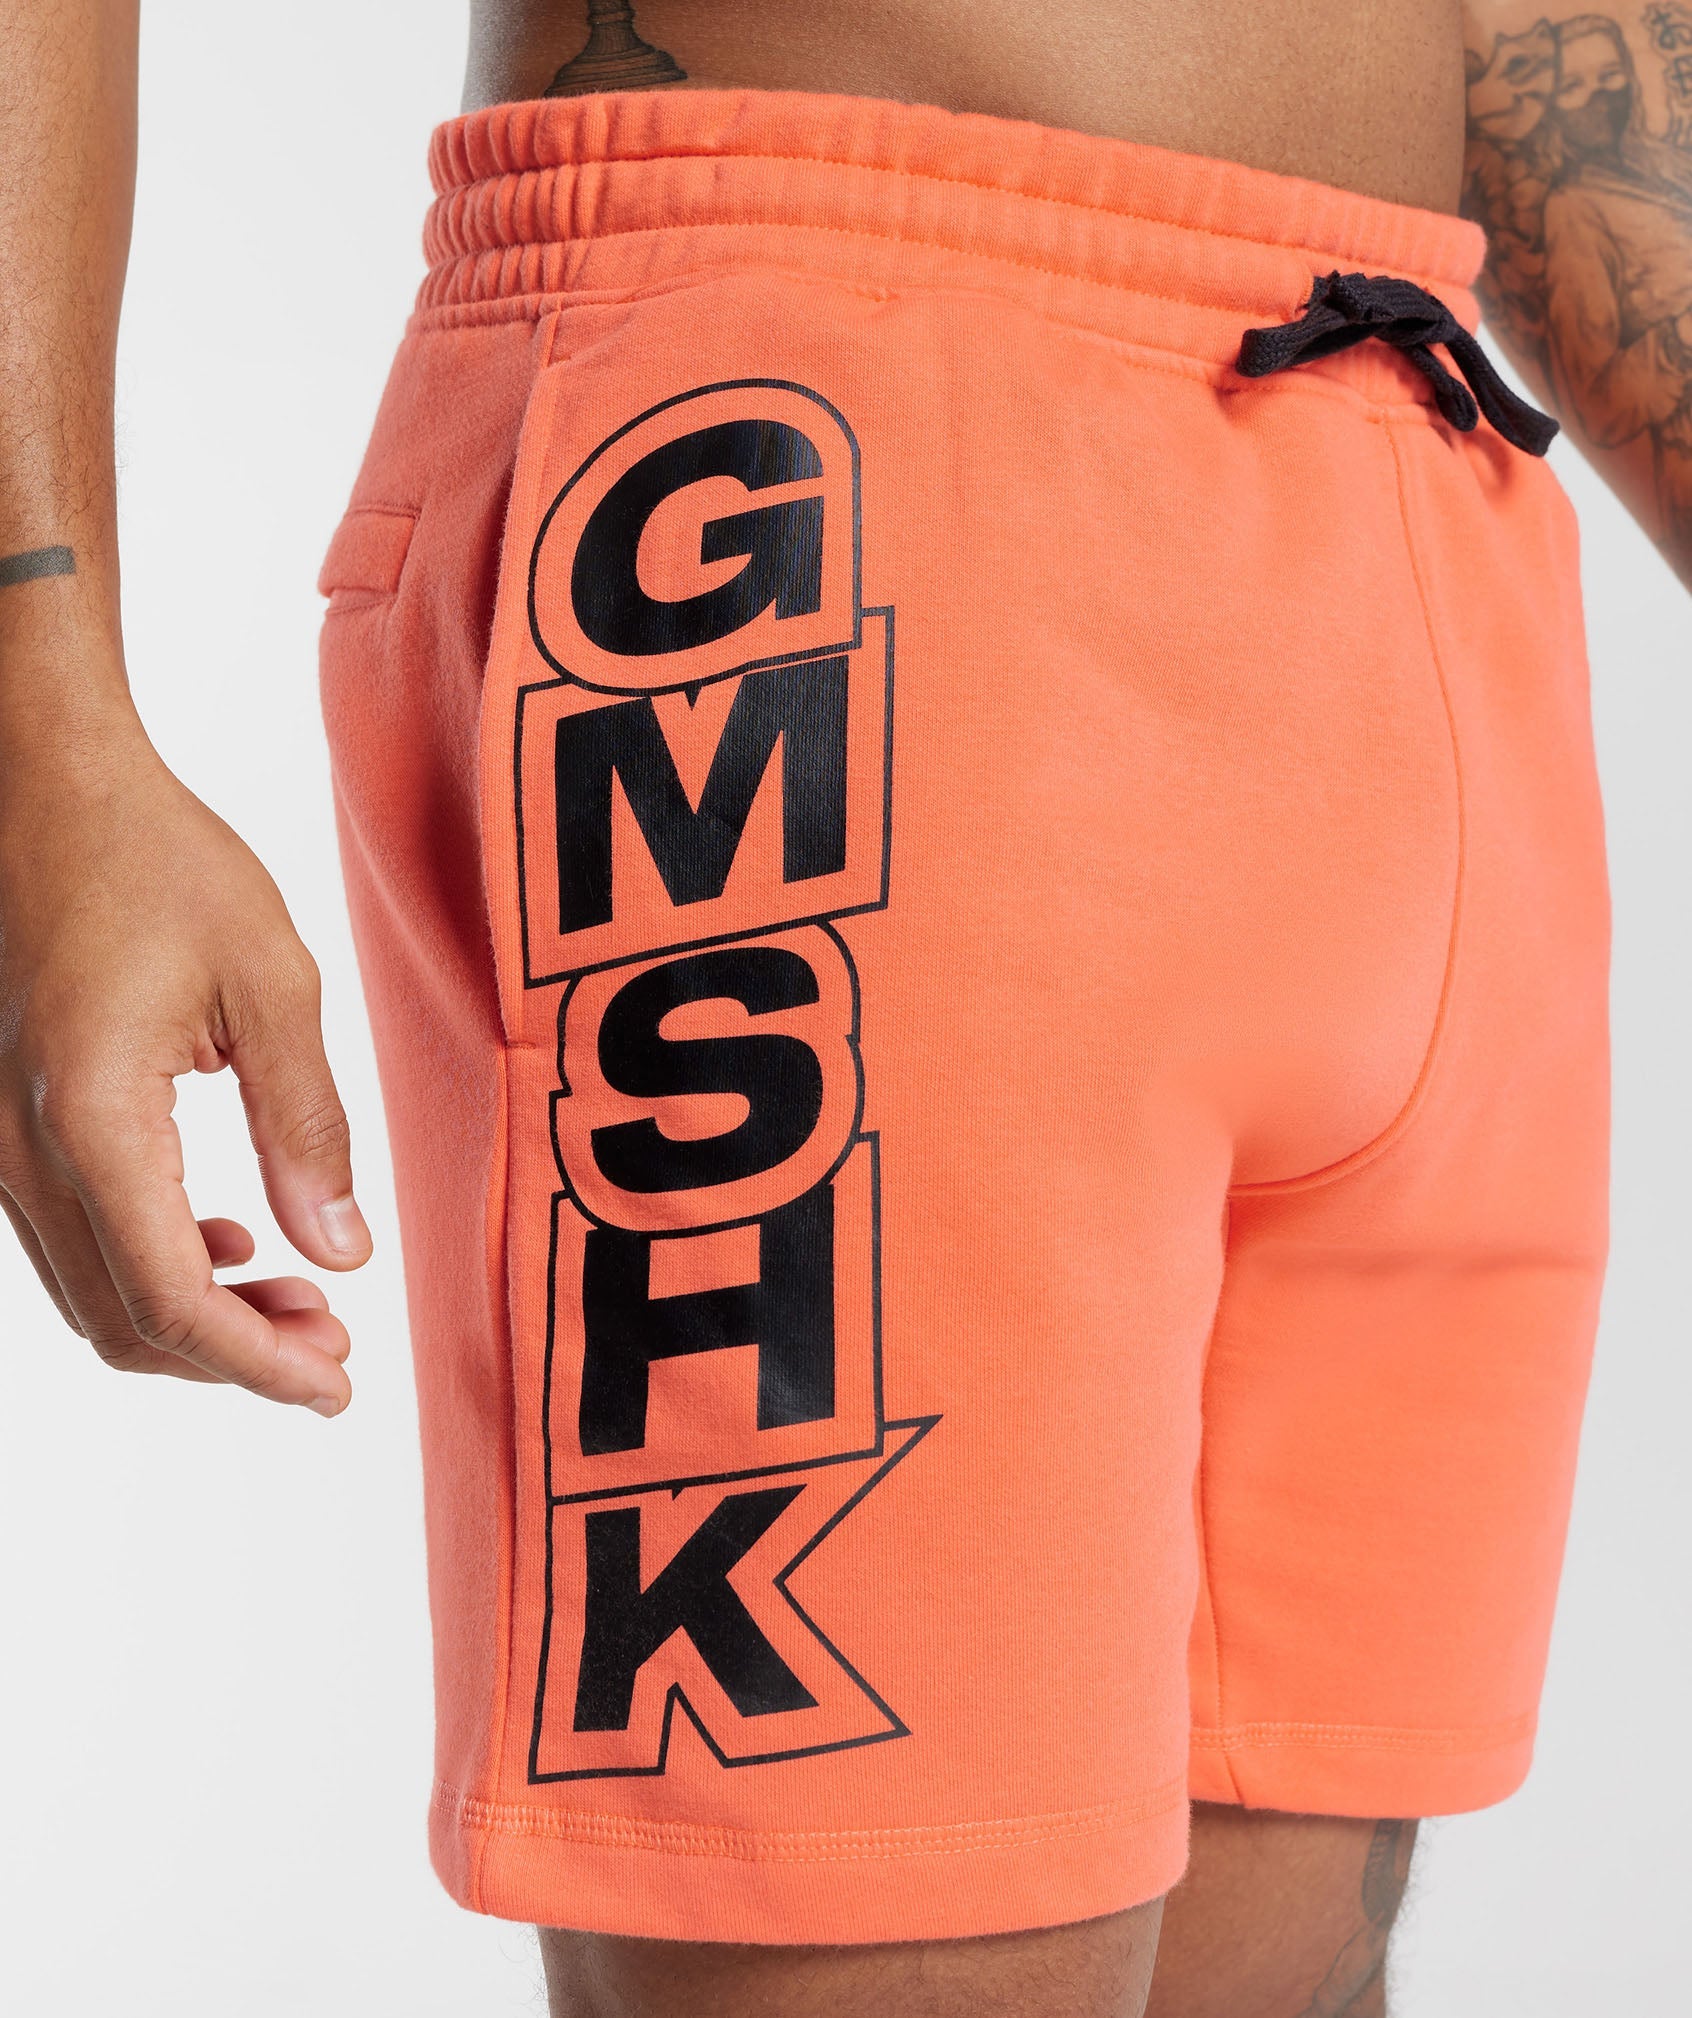 GMSHK Shorts in Solstice Orange